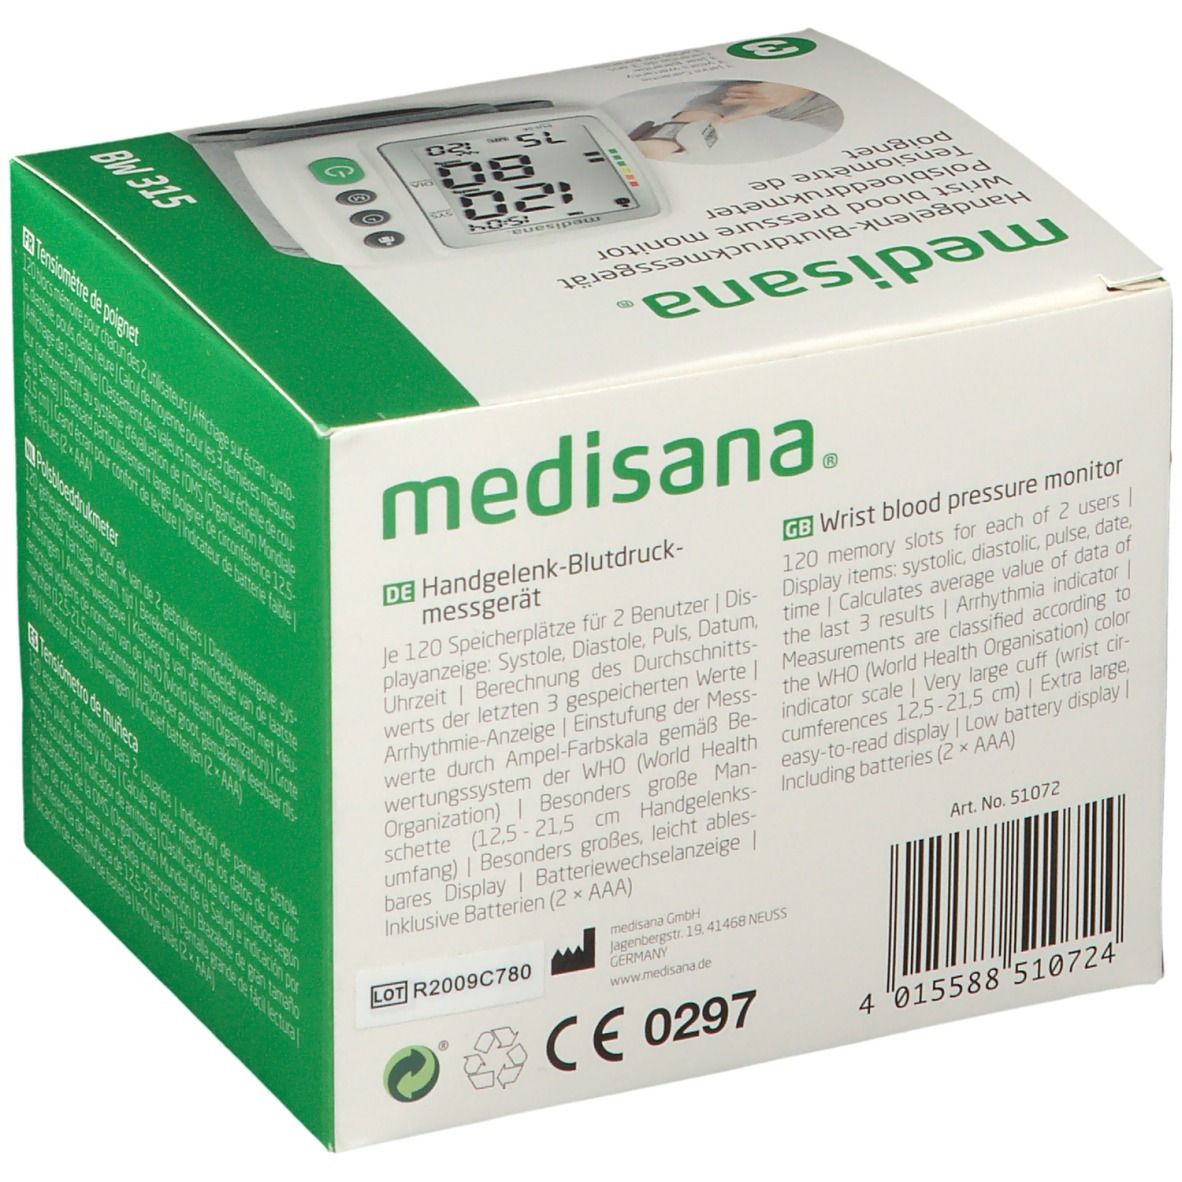 Medisana Handgelenk-Blutdruckmessgerät BW 315 St 1